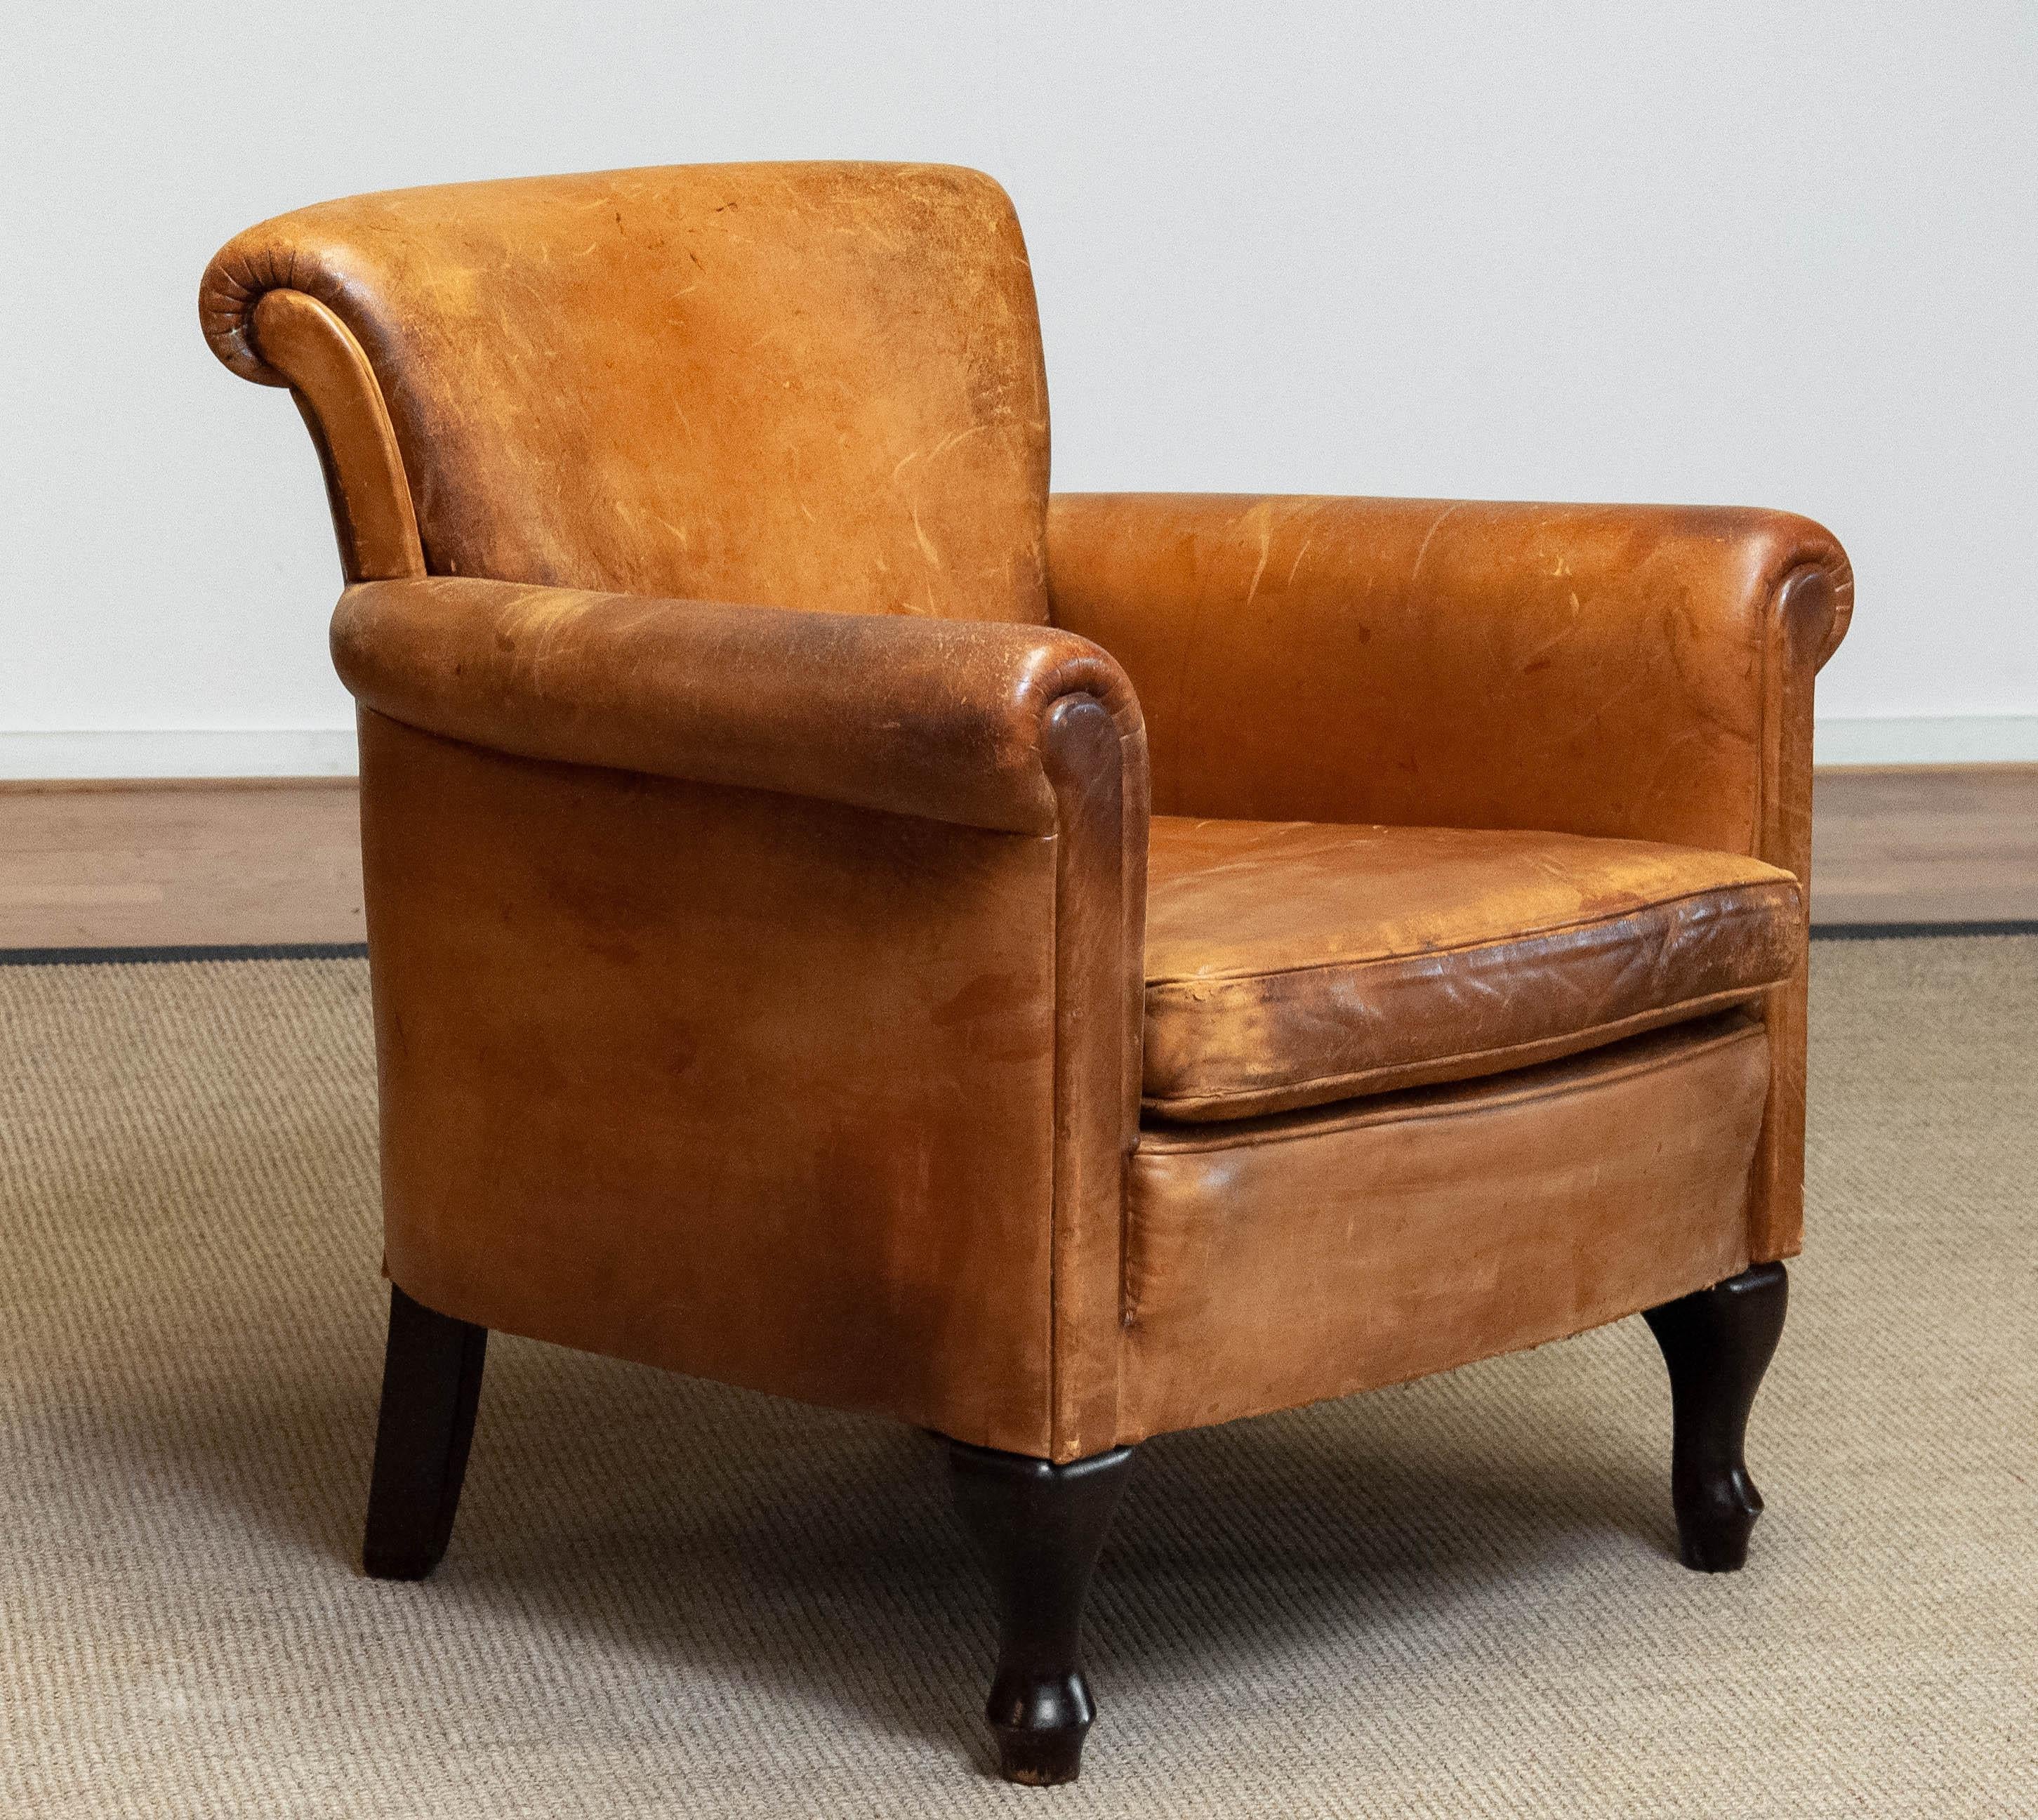 Schöne Französisch Art Deco Schafe Leder Club / Lounge-Stuhl. Gerollte Armlehnen und Rückenlehne mit losem Sitzkissen, alle mit dem originalen, weichen Schafsleder gepolstert. Die gealterte Patina und der Charakter dieser klassischen